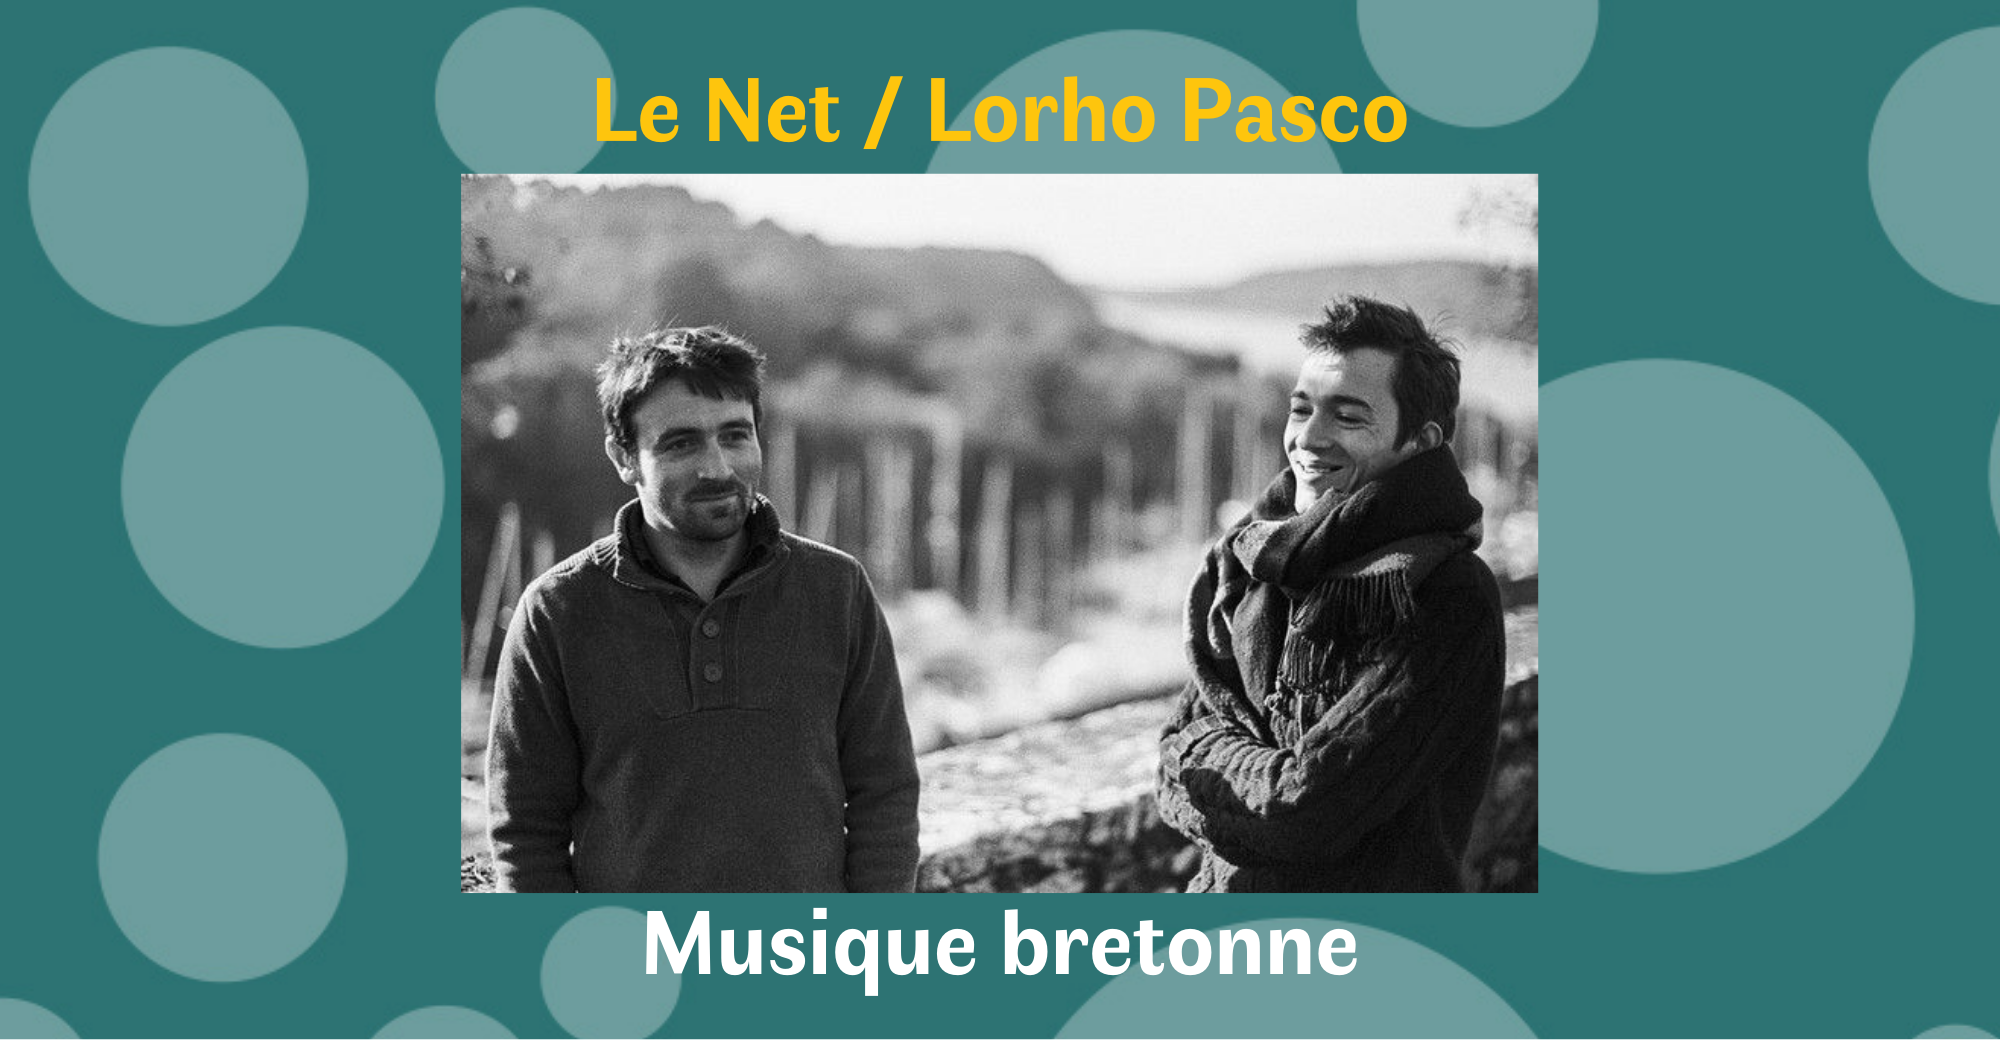 Le Net / Lorho Pasco